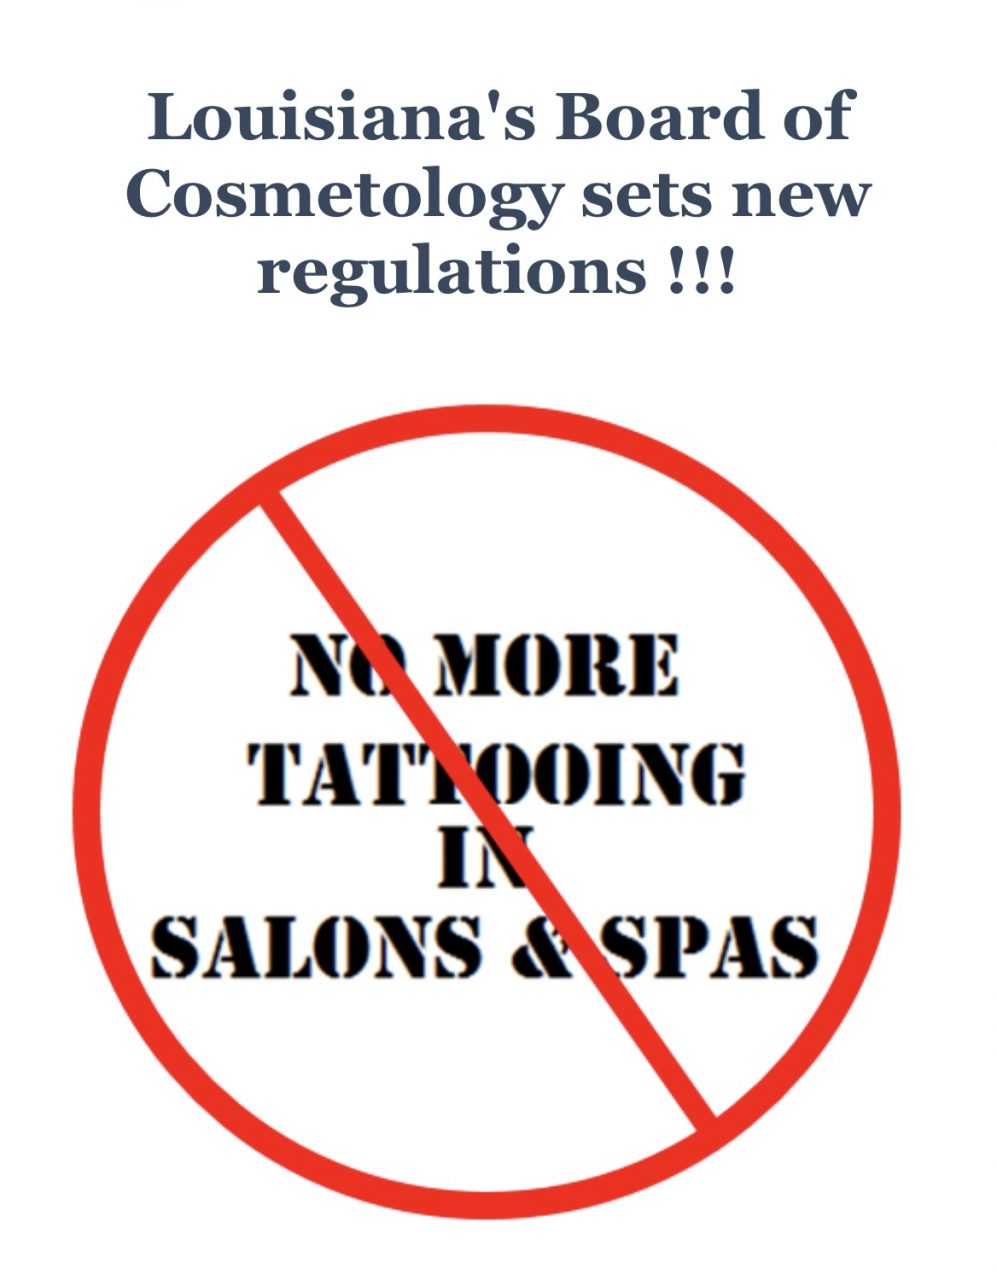 Tattoo/Permanent Makeup shops